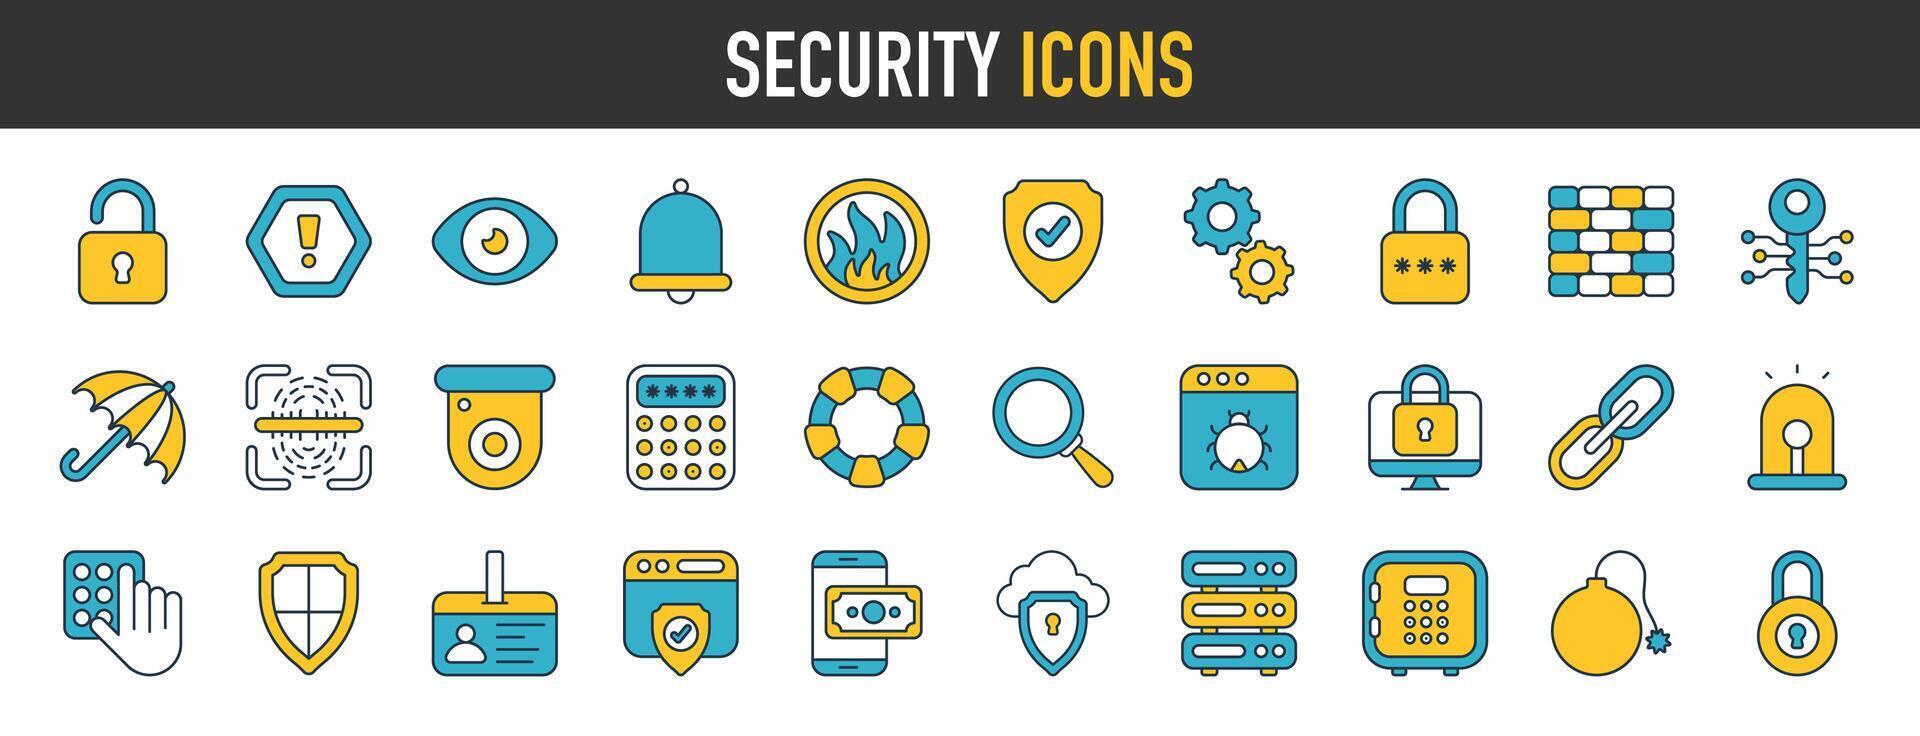 sécurité, sécurité, protection plat Icônes. tel comme doigt imprimer, affaires Les données protection technologie, cyber Sécurité etc. vecteur illustration.